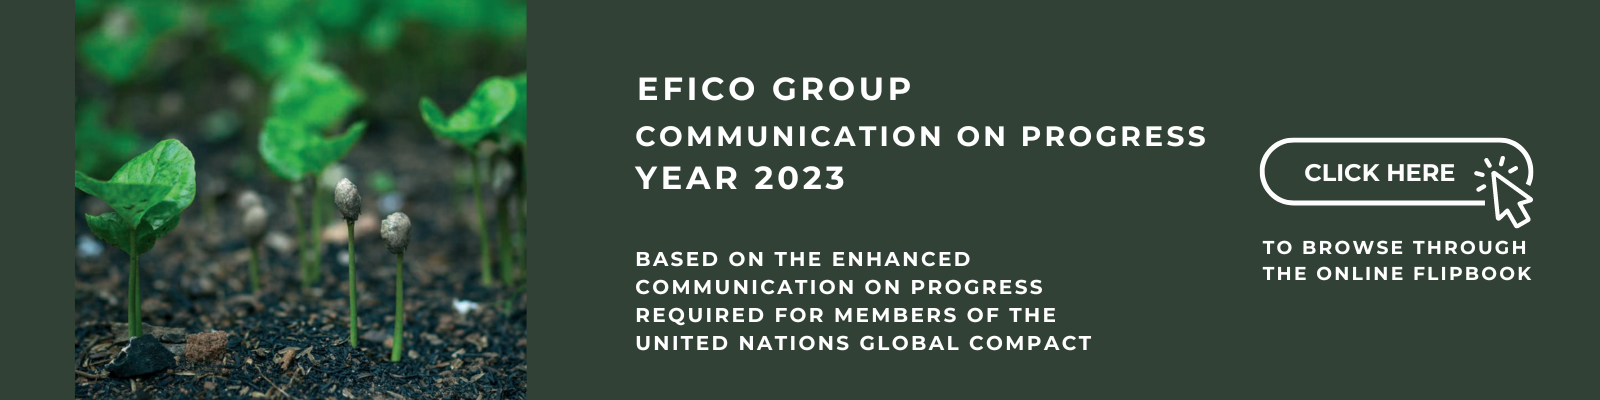 EFICO GROUP Communication on Progress 2023